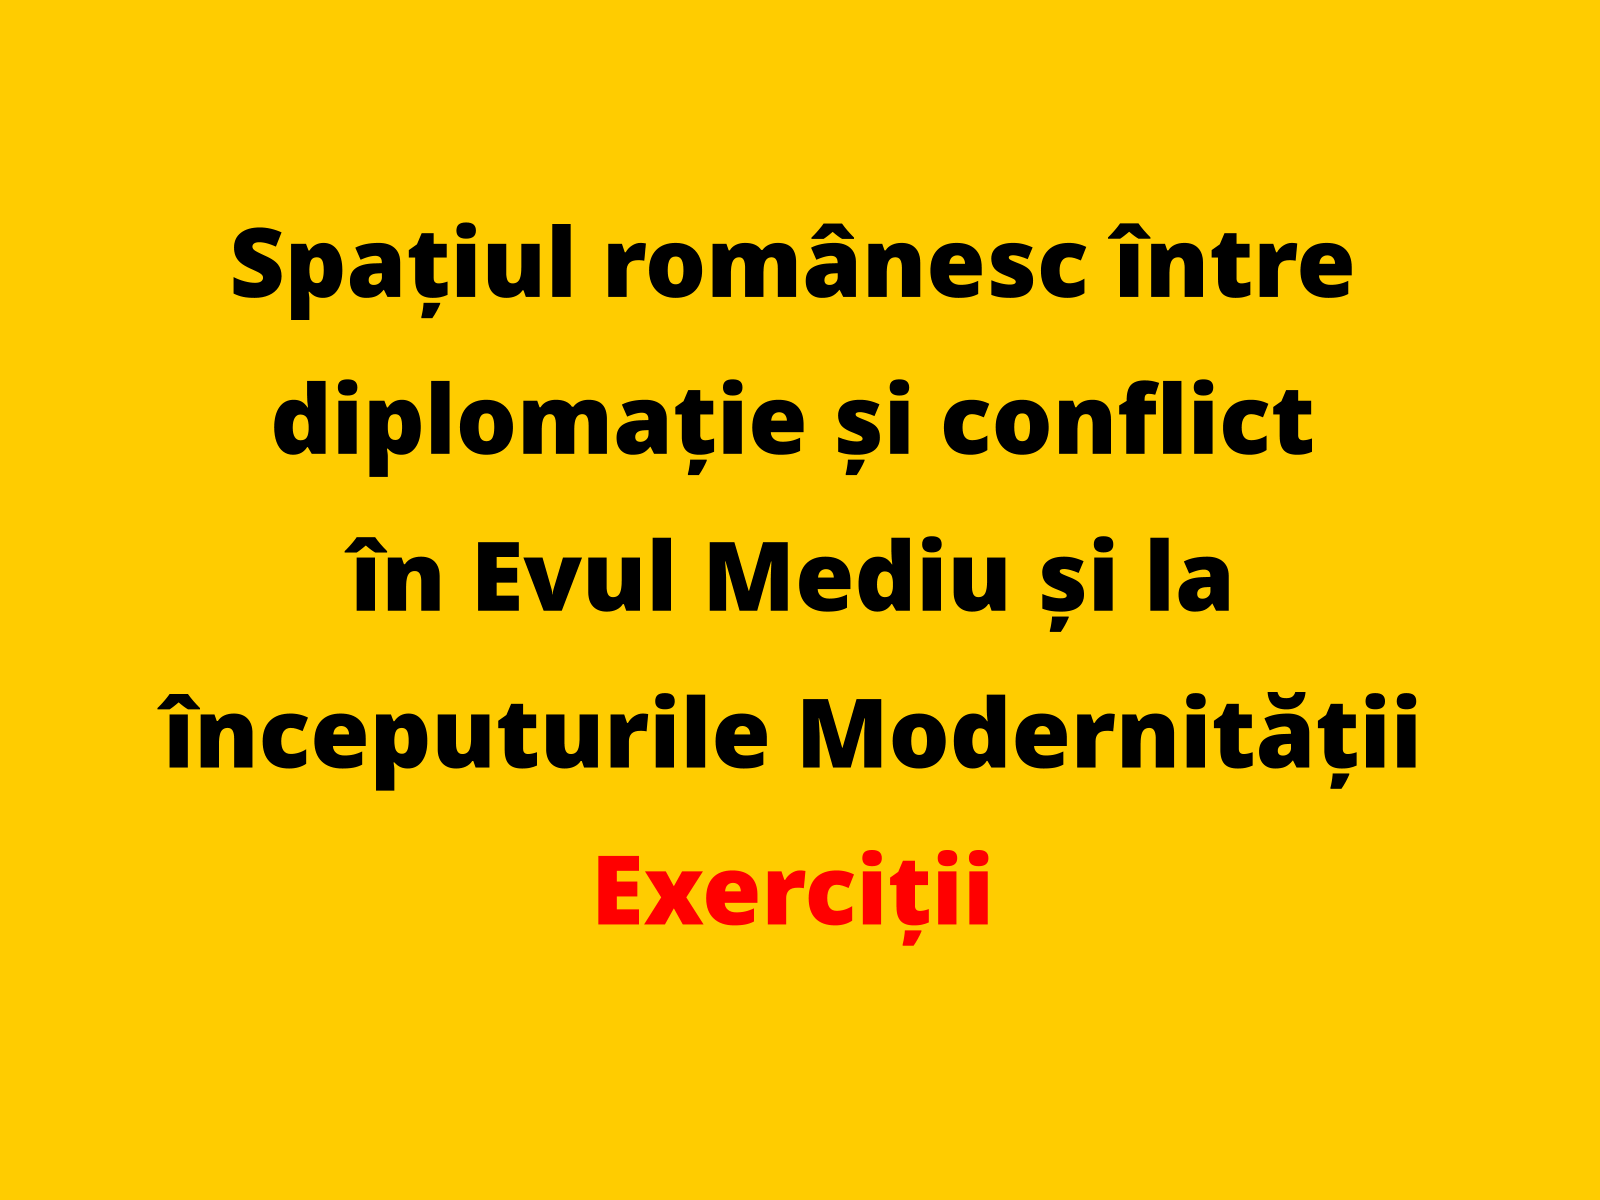 Argumentați, printr-un fapt istoric relevant, afirmația conform căreia românii se implică prin acțiuni diplomatice în relațiile internaționale din secolele al XV-lea – al XVII-lea